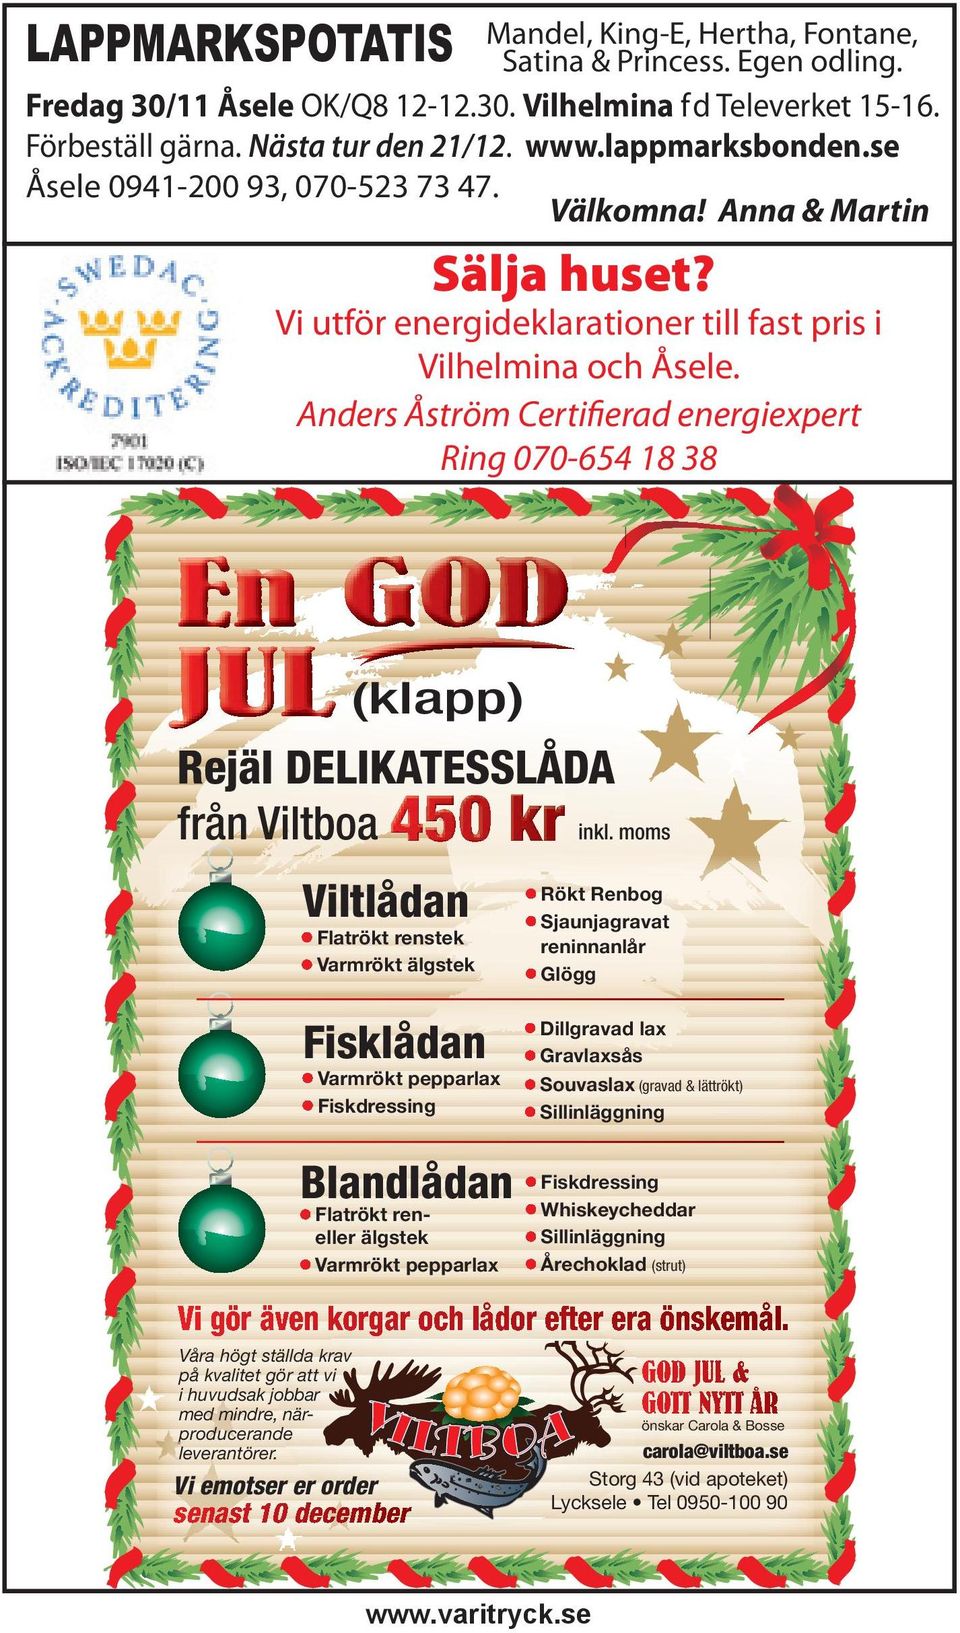 Vi utför energideklarationer till fast pris i Vilhelmina och Åsele. Anders Åström Certifierad energiexpert Ring 070-654 18 38 inkl.